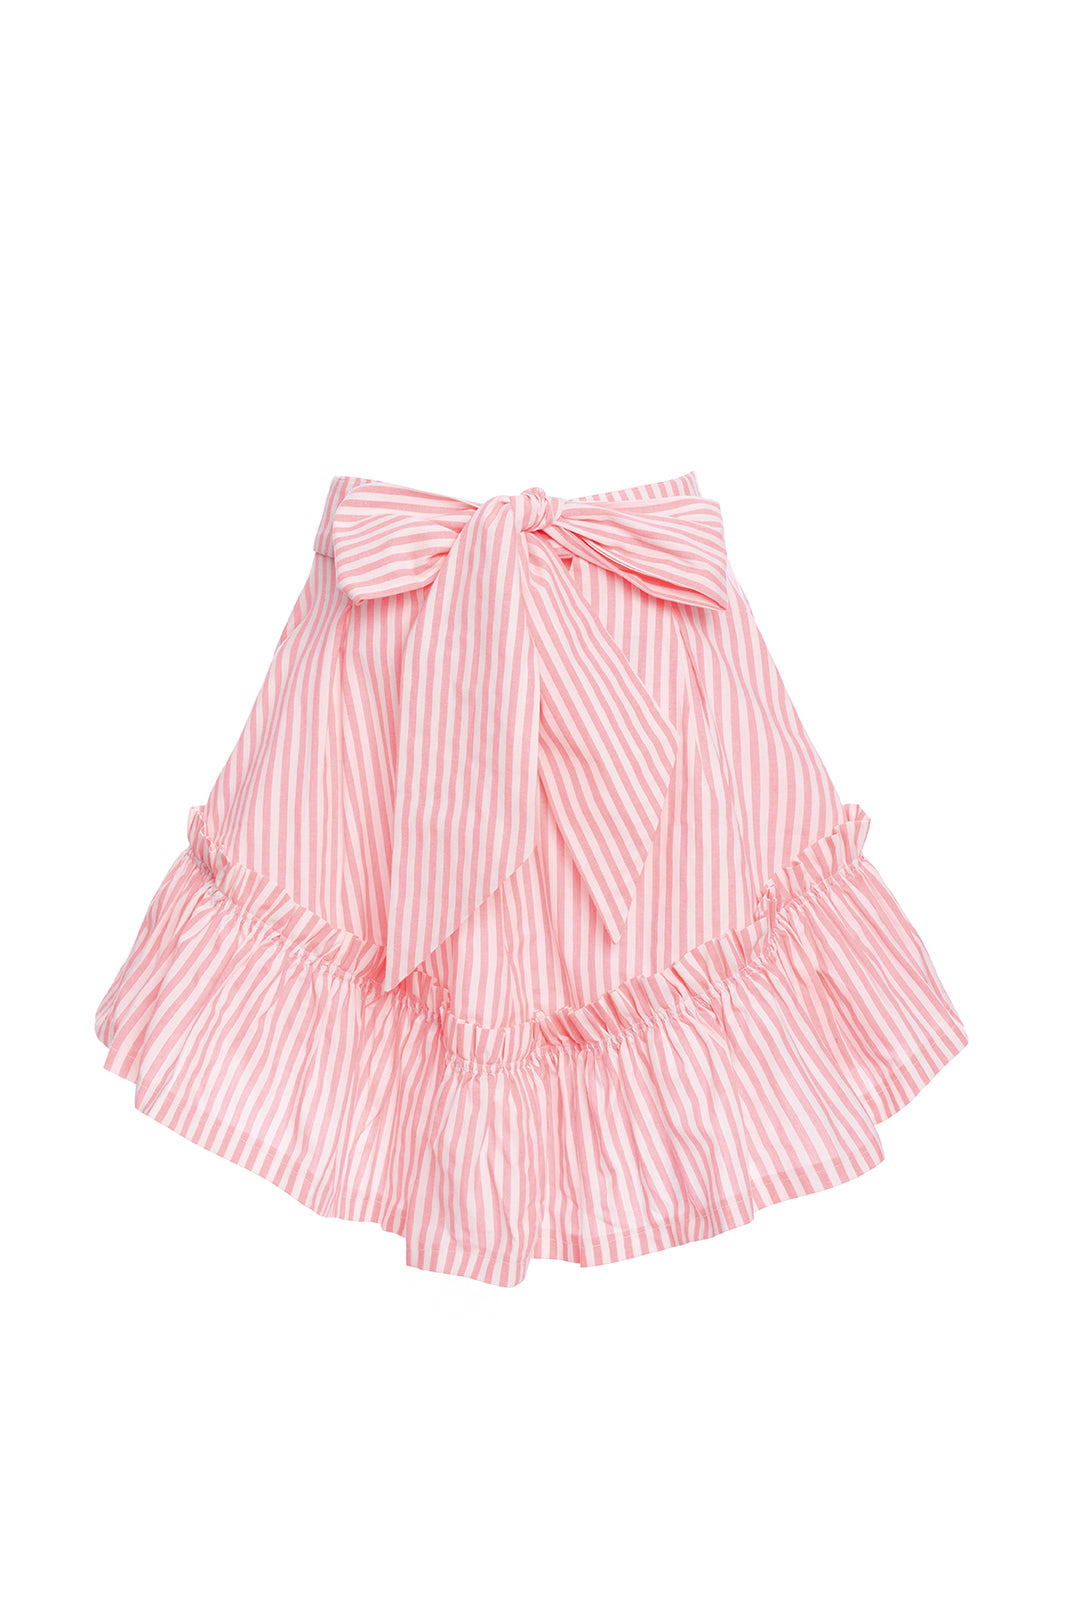 Quinoa Skirt Pink Candy Stripe